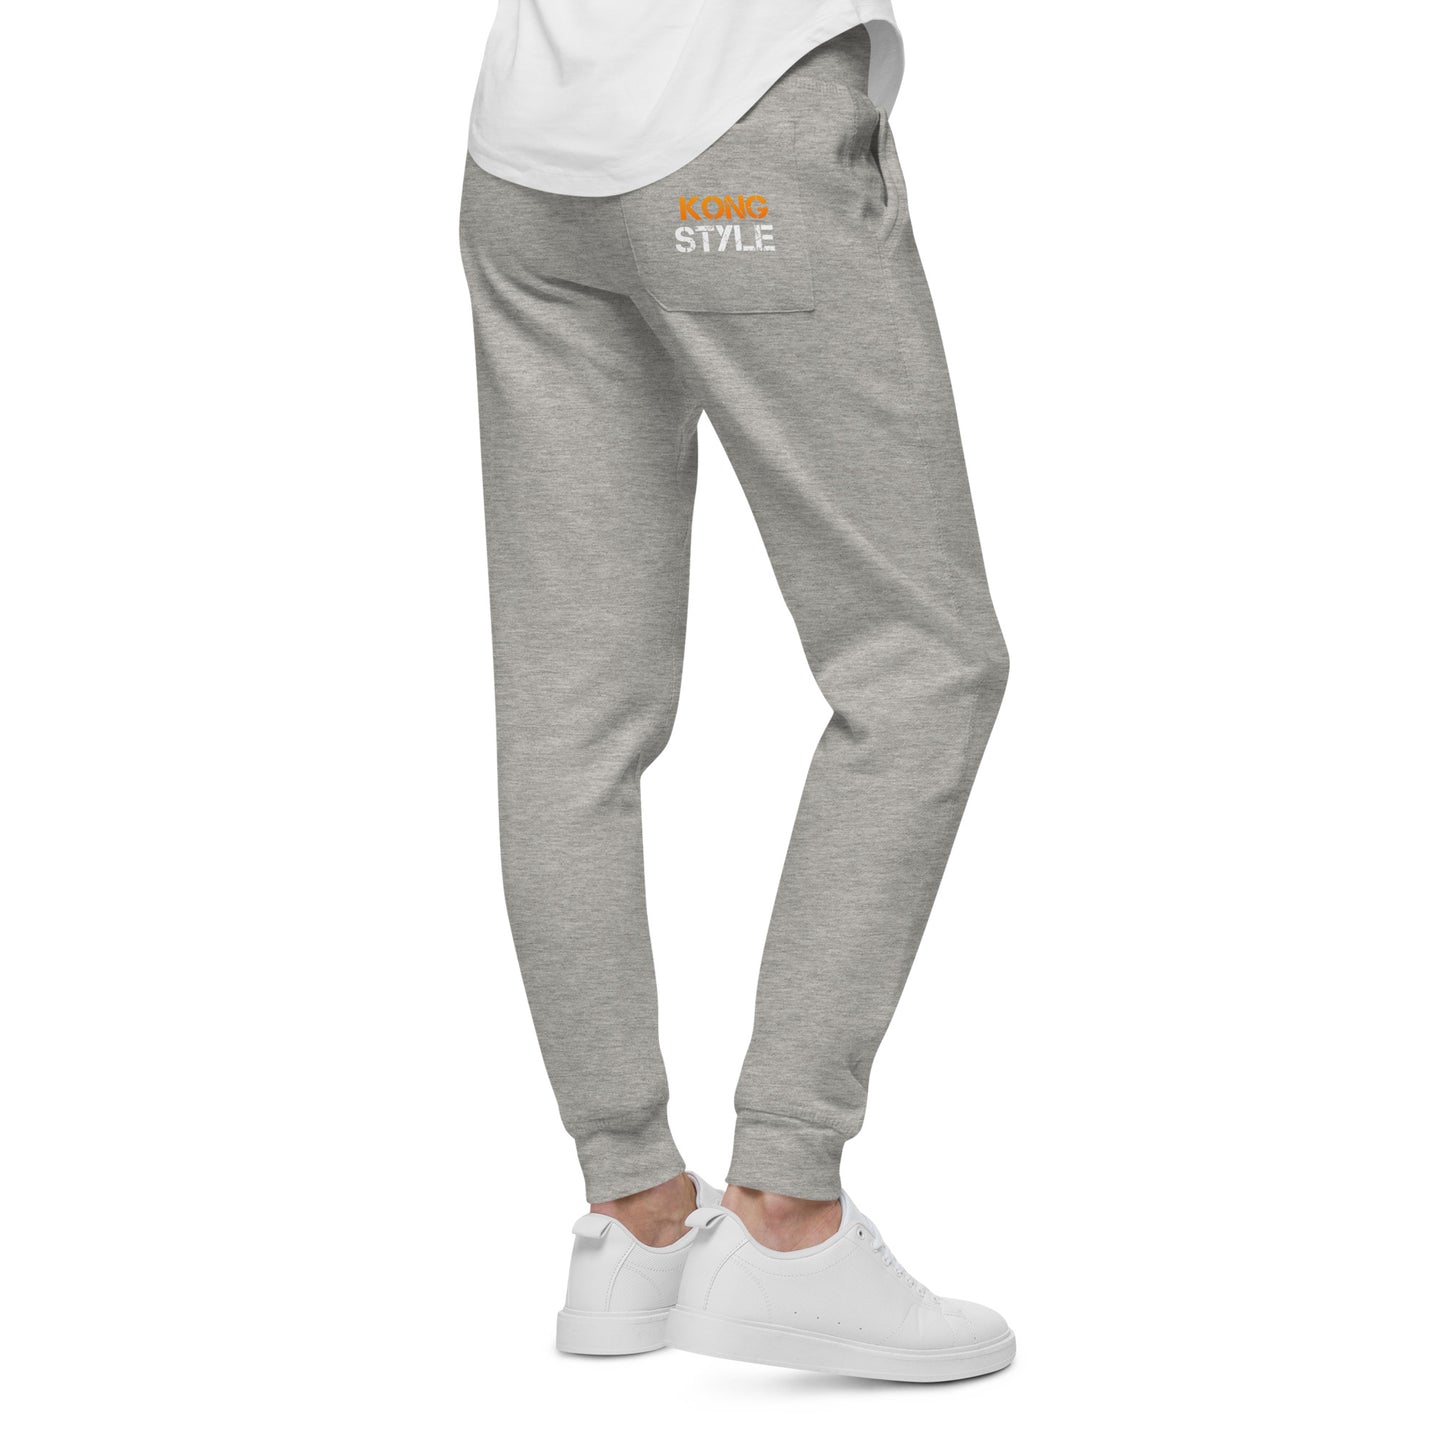 Kong Style Unisex fleece sweatpants